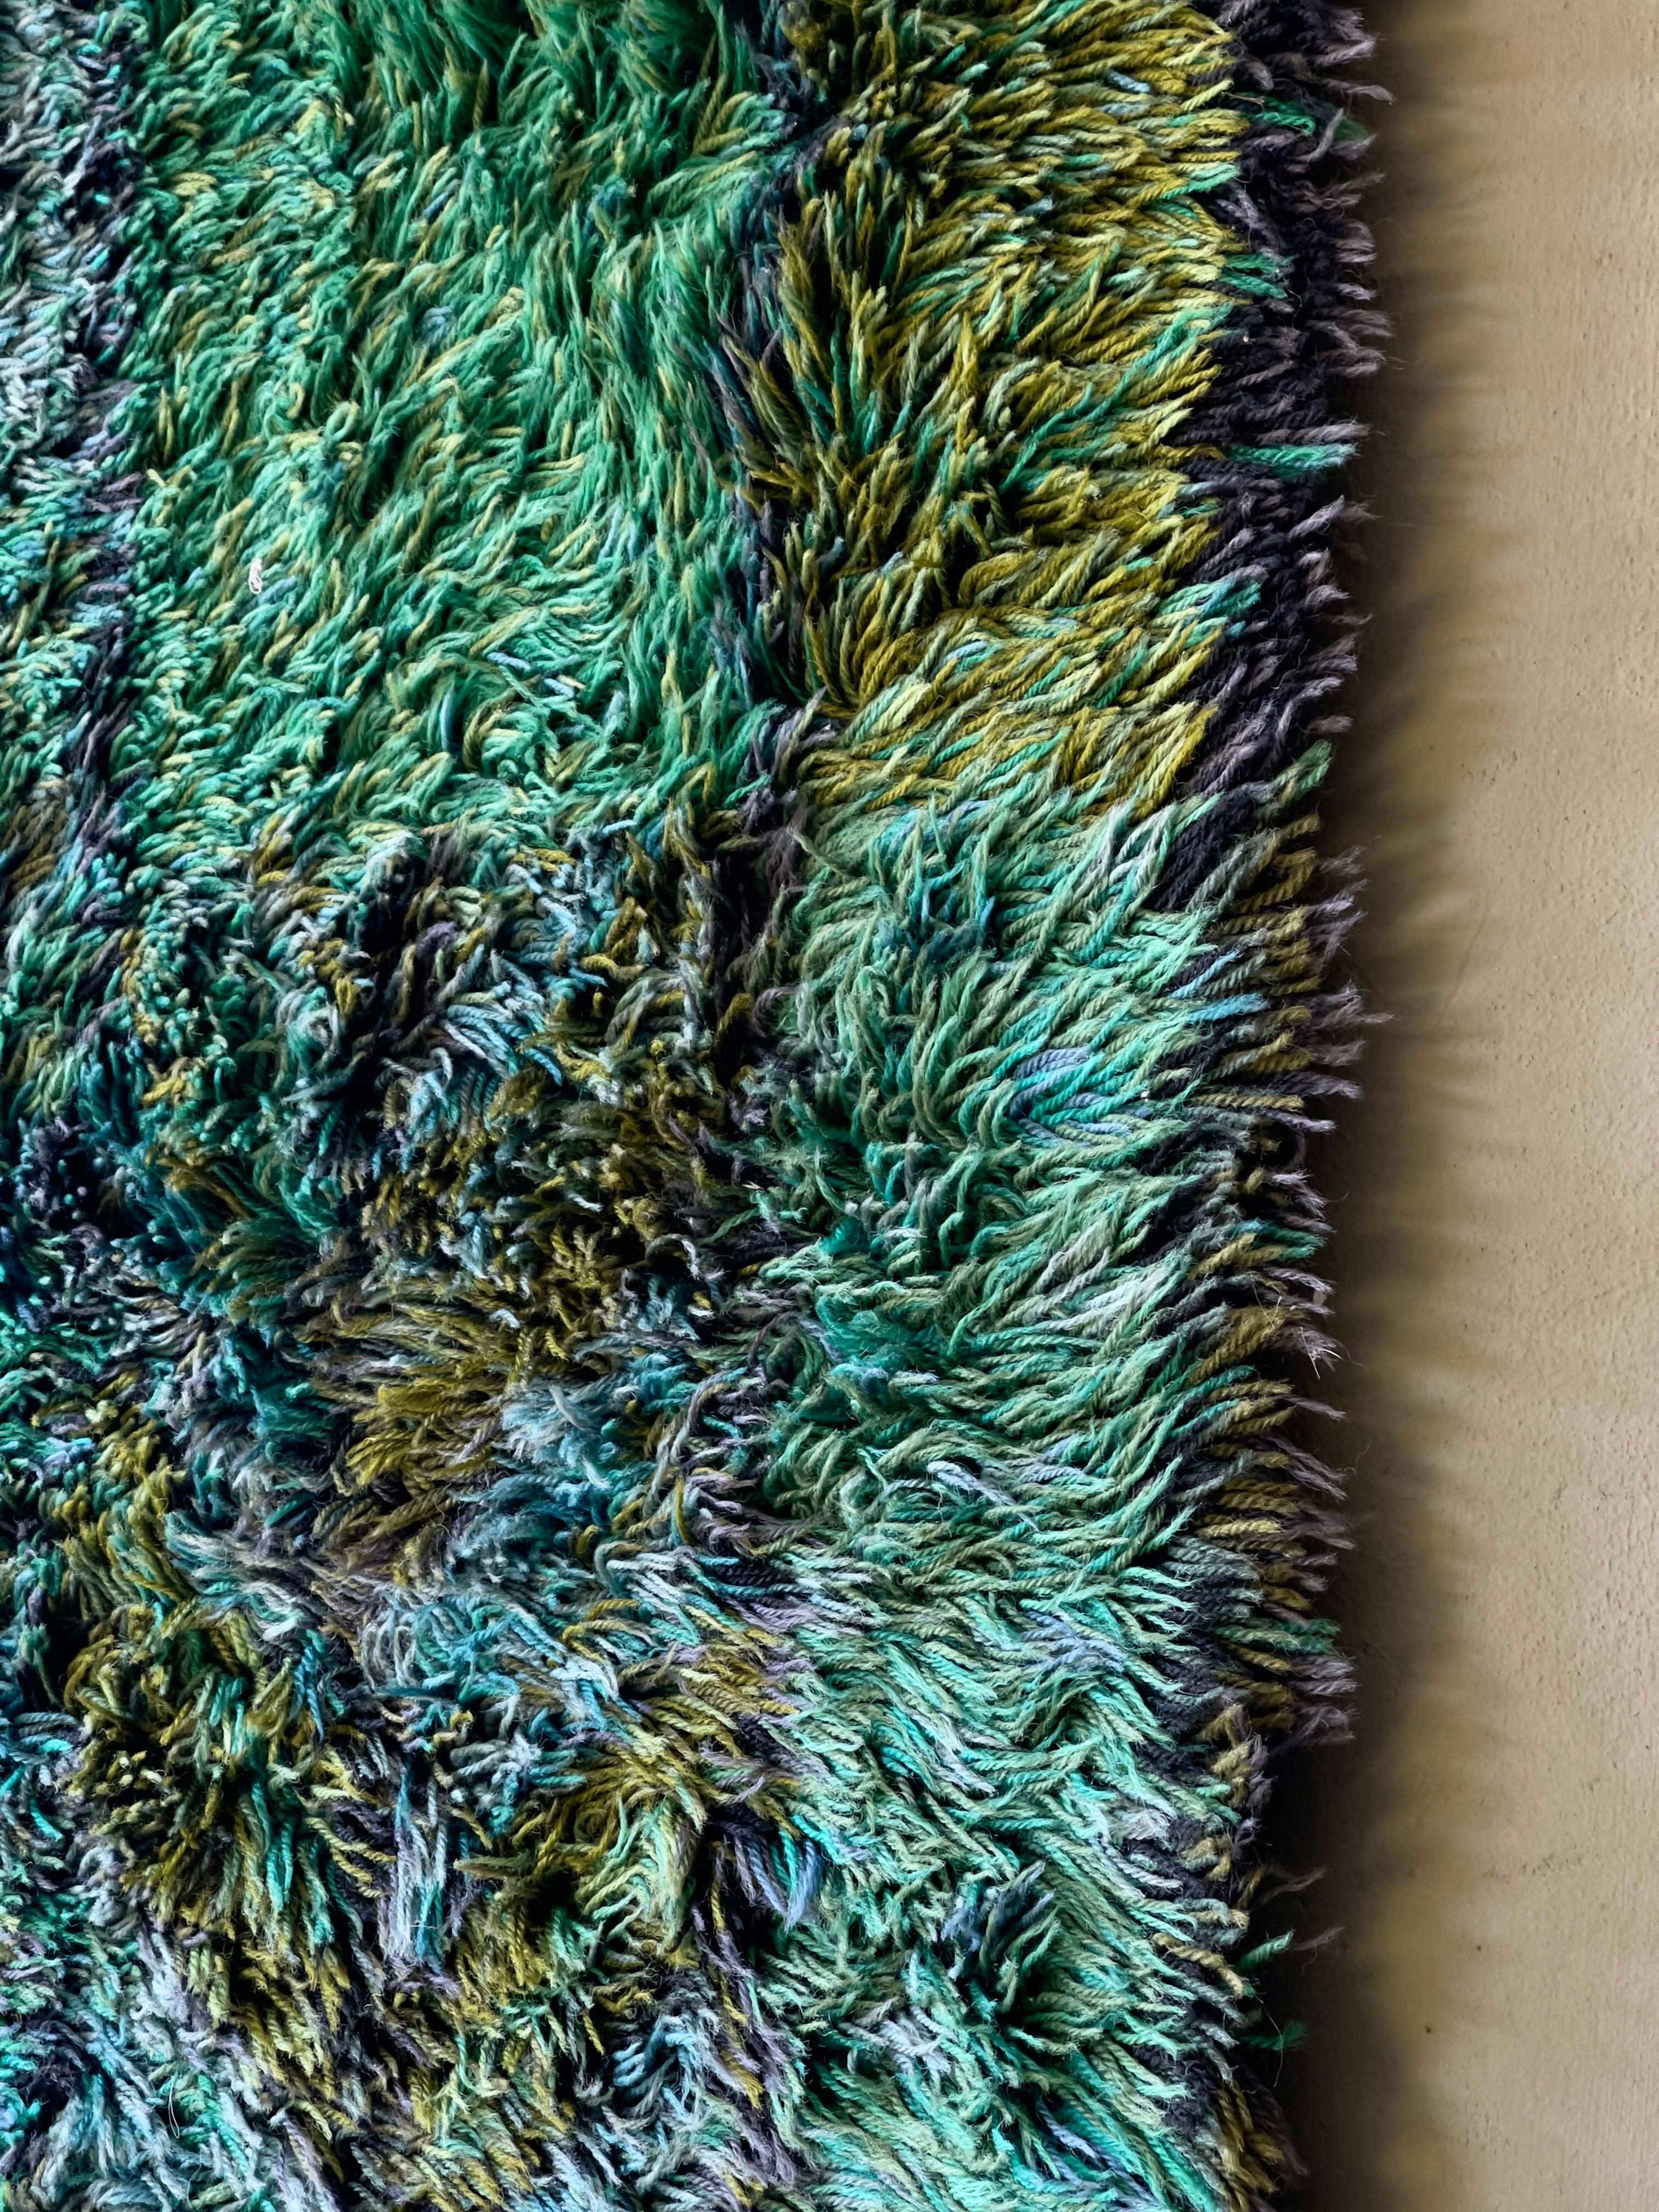 Schwedischer grüner und blauer Rya-Teppich von Marianne Richter für Ötergyllen rya, 1960er Jahre. Handgefertigt in Rya-Webtechnik aus 100% Wolle.

Die schwedische Textilkünstlerin Marianne Richter ist international für ihre außergewöhnlichen